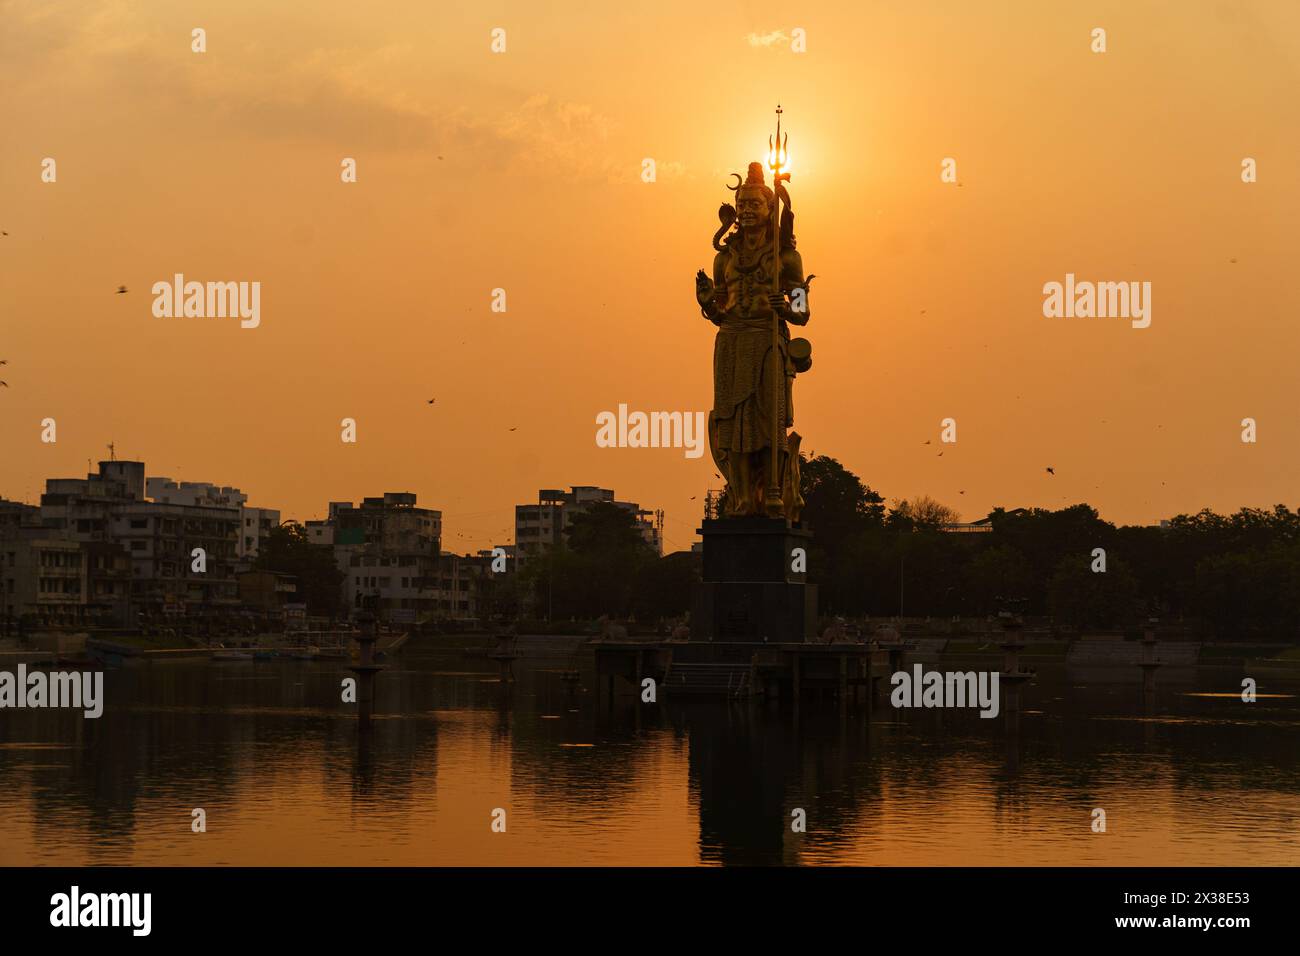 Die Statue des Hindugottes Lord Shiva im Sursagar Lake ist bei Sonnenuntergang in der Stadt Vadodara im Bundesstaat Gujarat zu sehen. Der Begriff der hinduismus-Religion Stockfoto